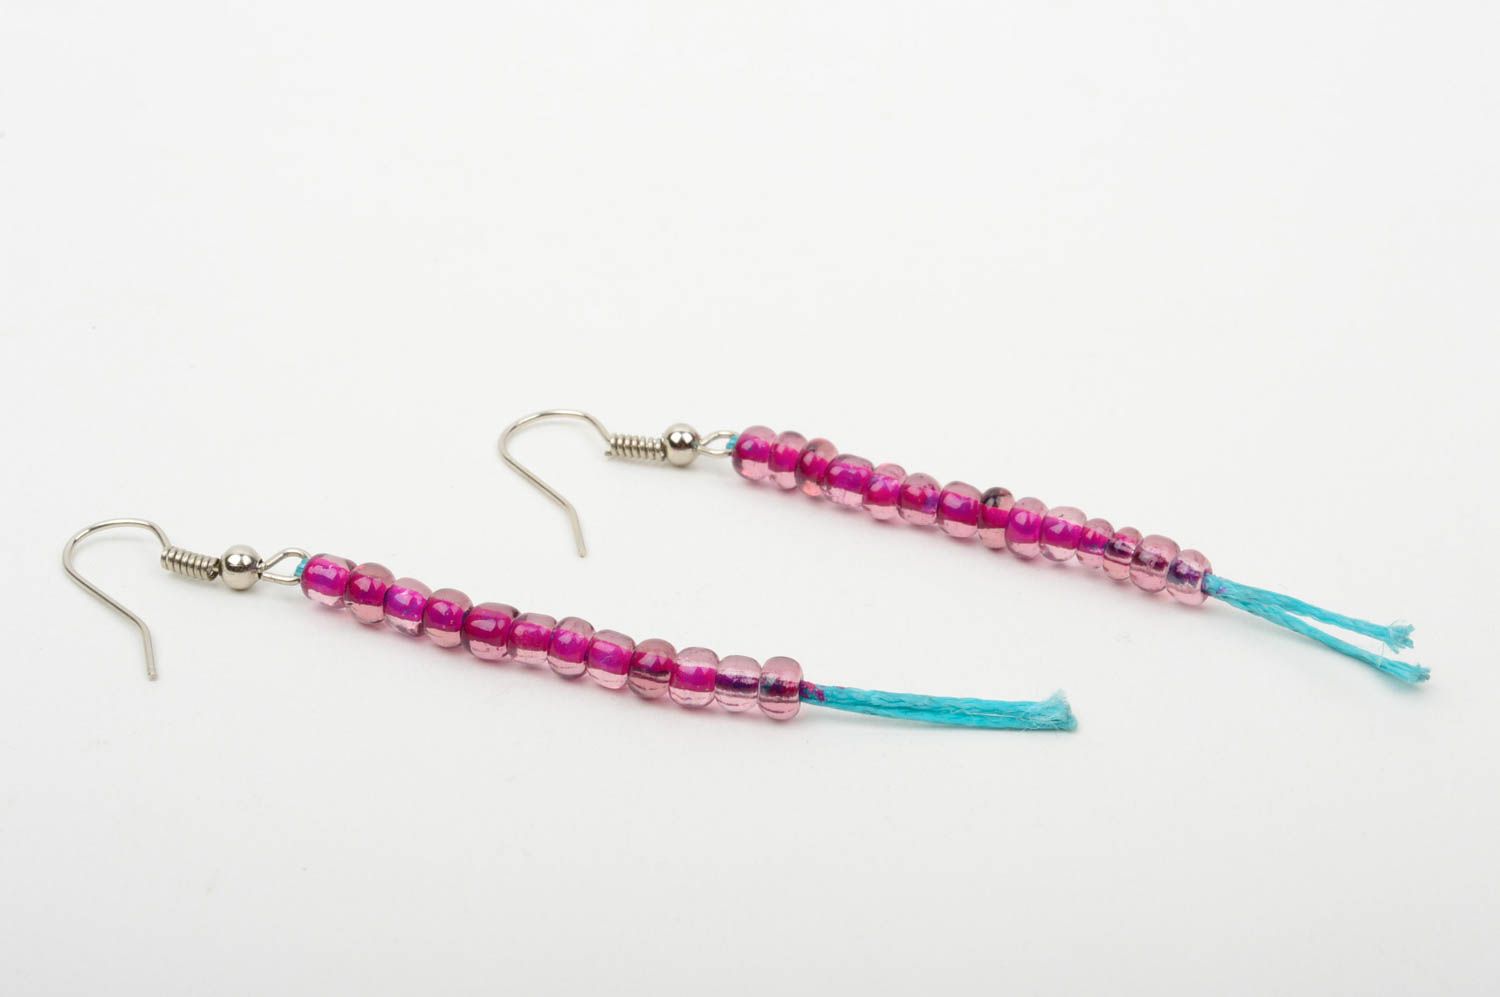 Handmade earrings designer earrings beads earrings for girl gift ideas photo 4